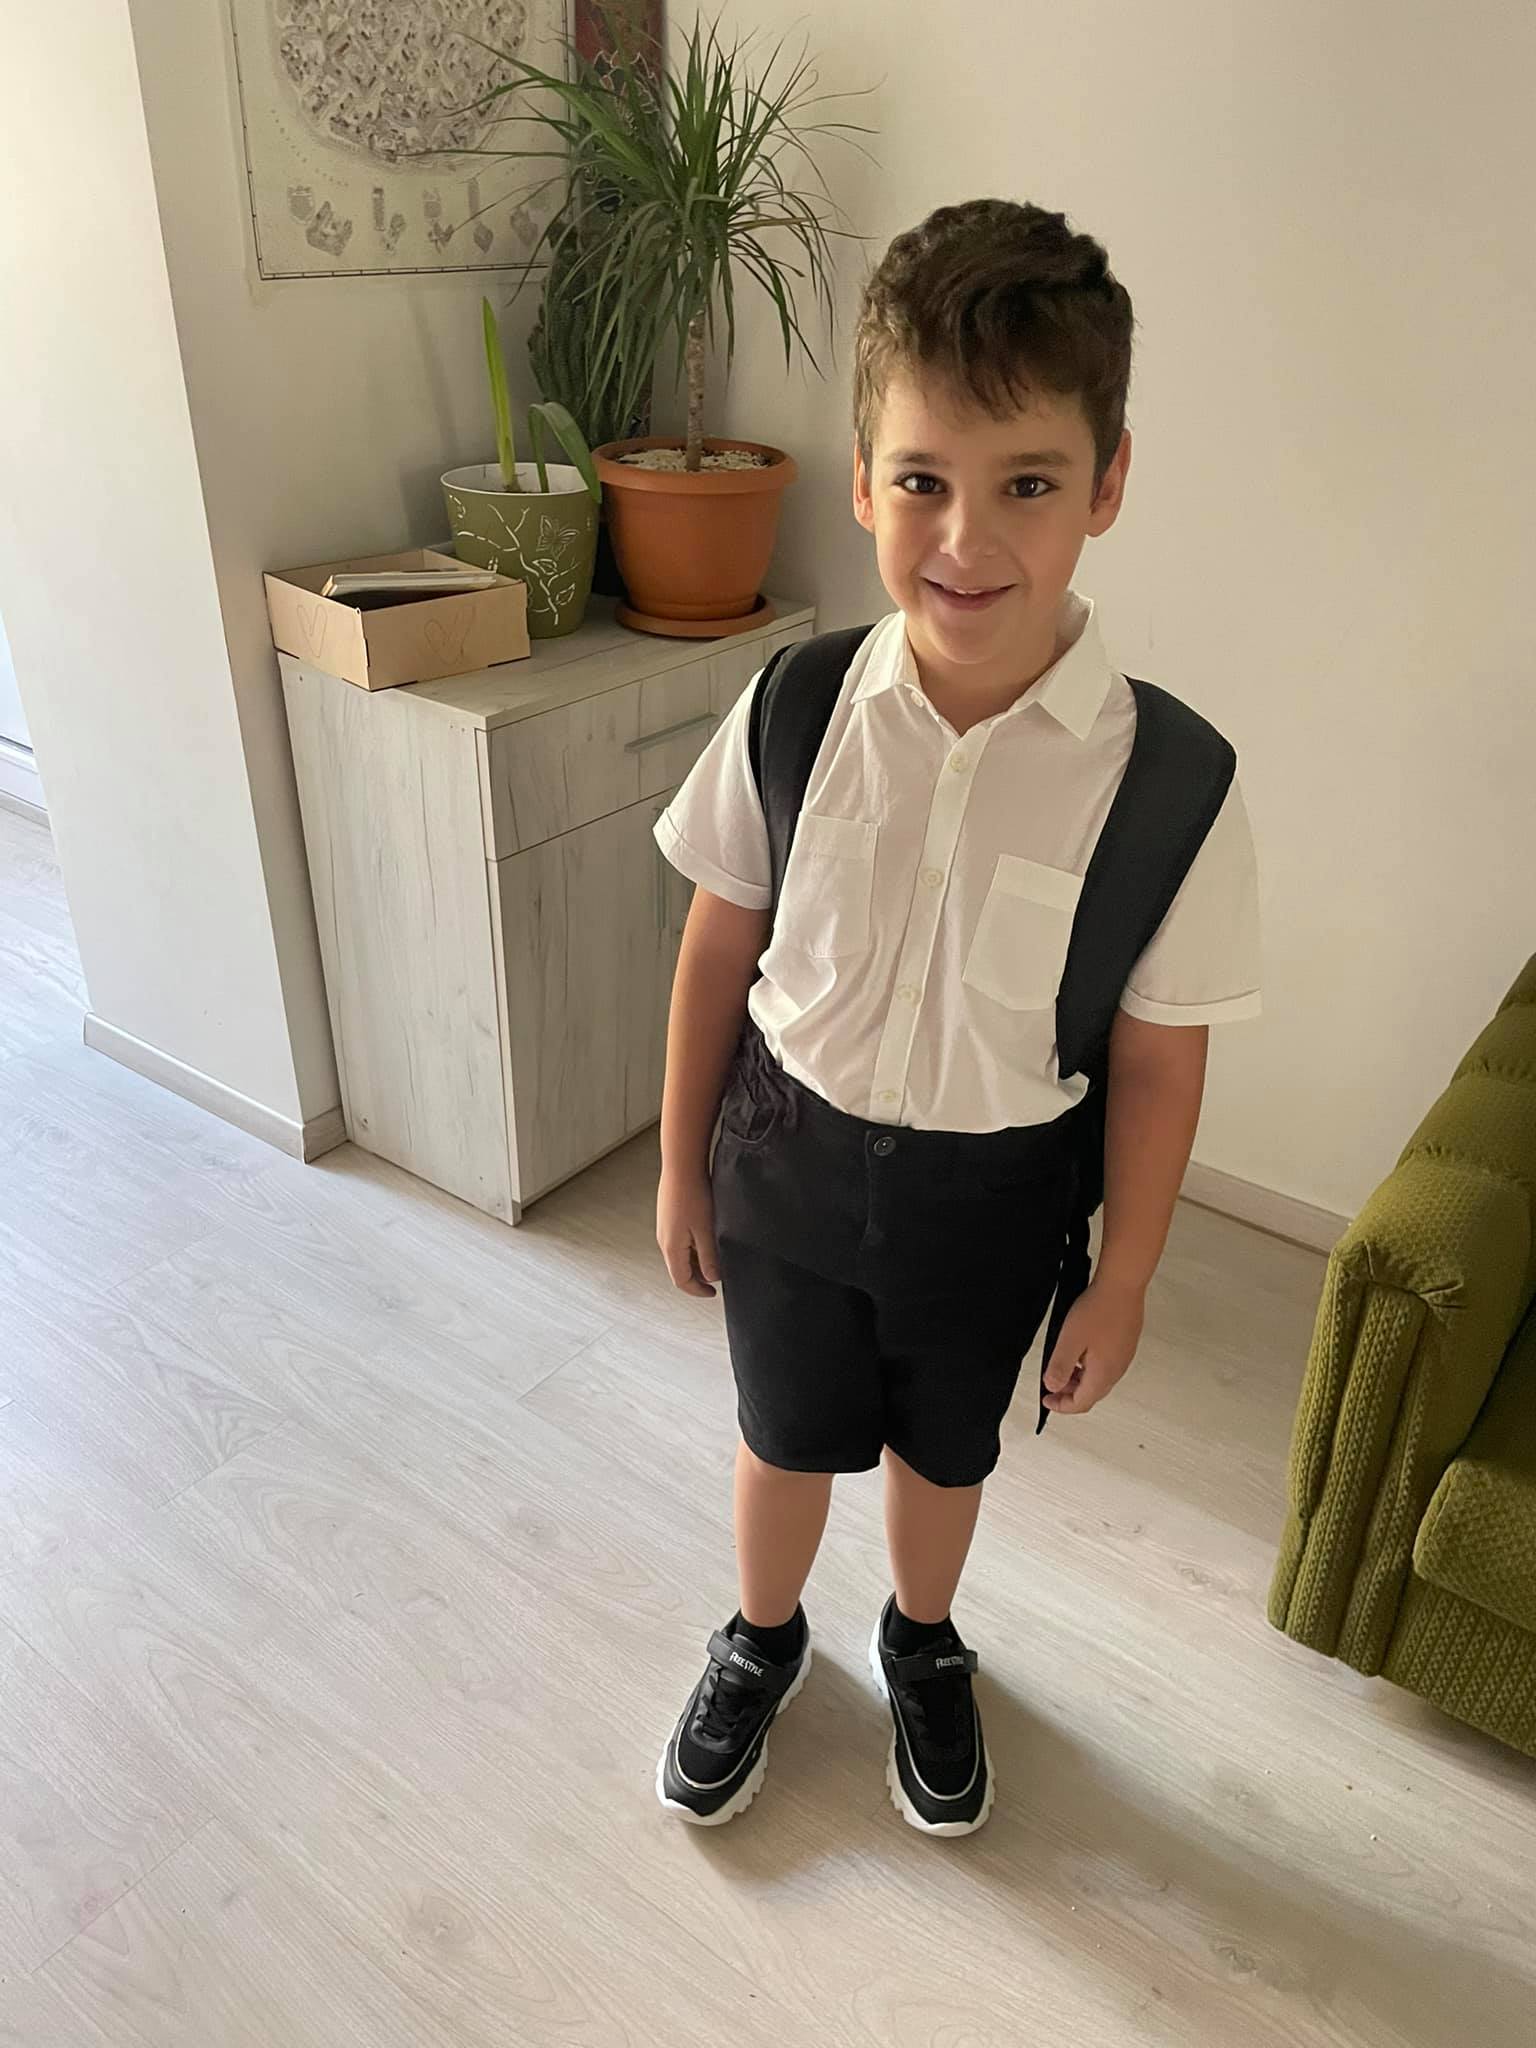 “نه به معلمان”  اولین قدم های DJ Vaccine ، پسر آروسیک مکرتچیان به مدرسه – اخبار از ارمنستان